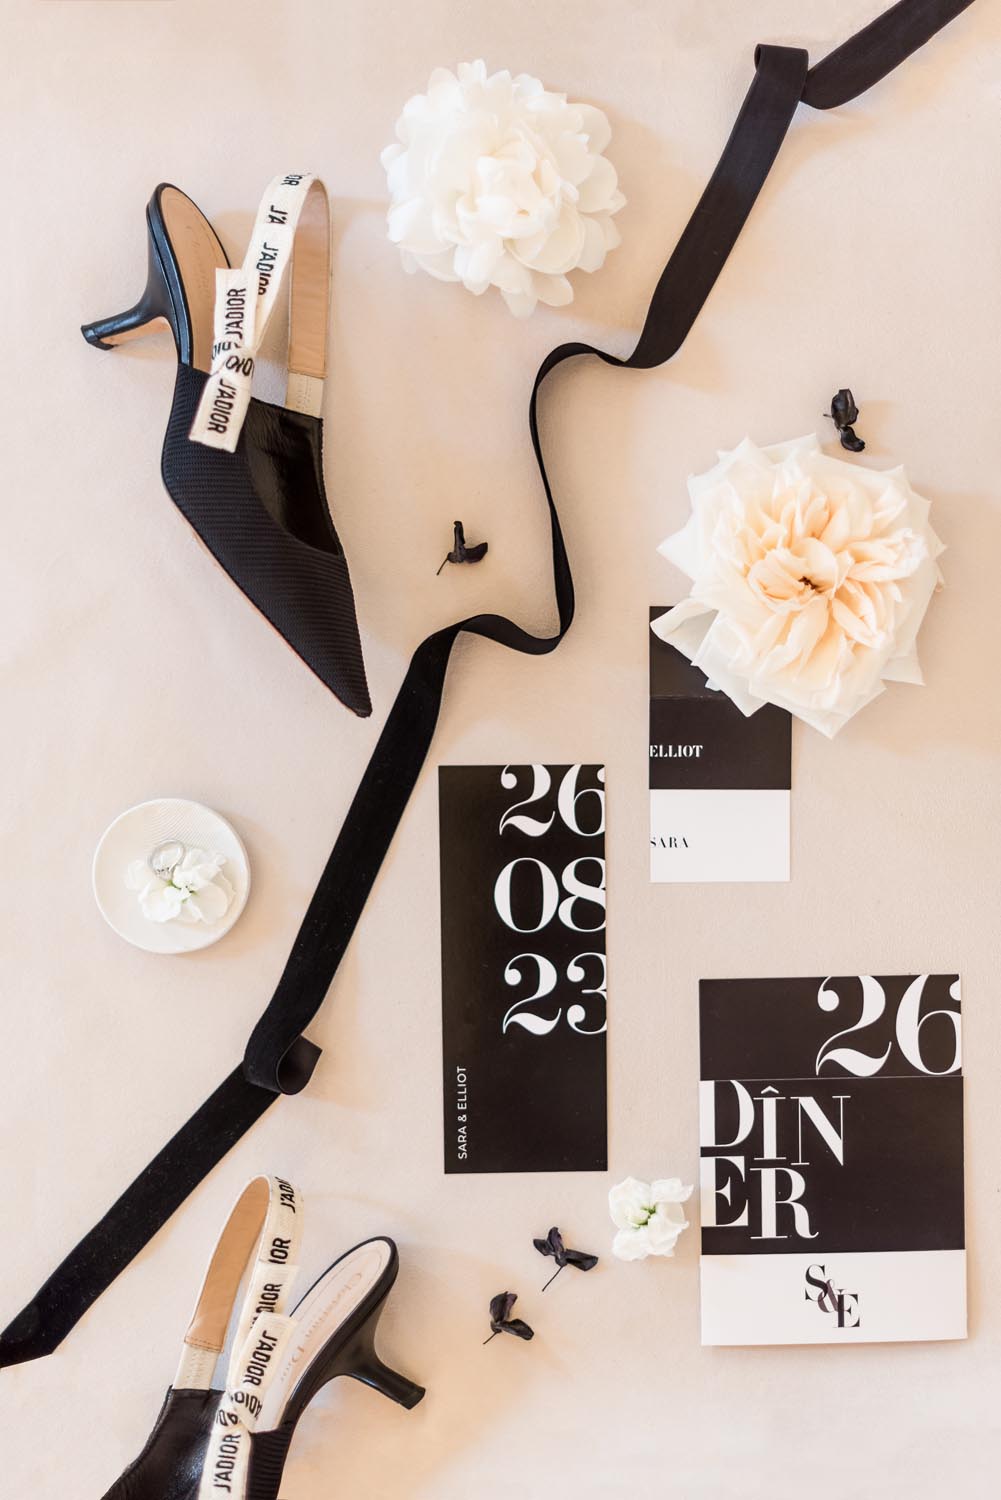 Faire-part mariage black and white blanc noir moderne graphique minimalist élégant